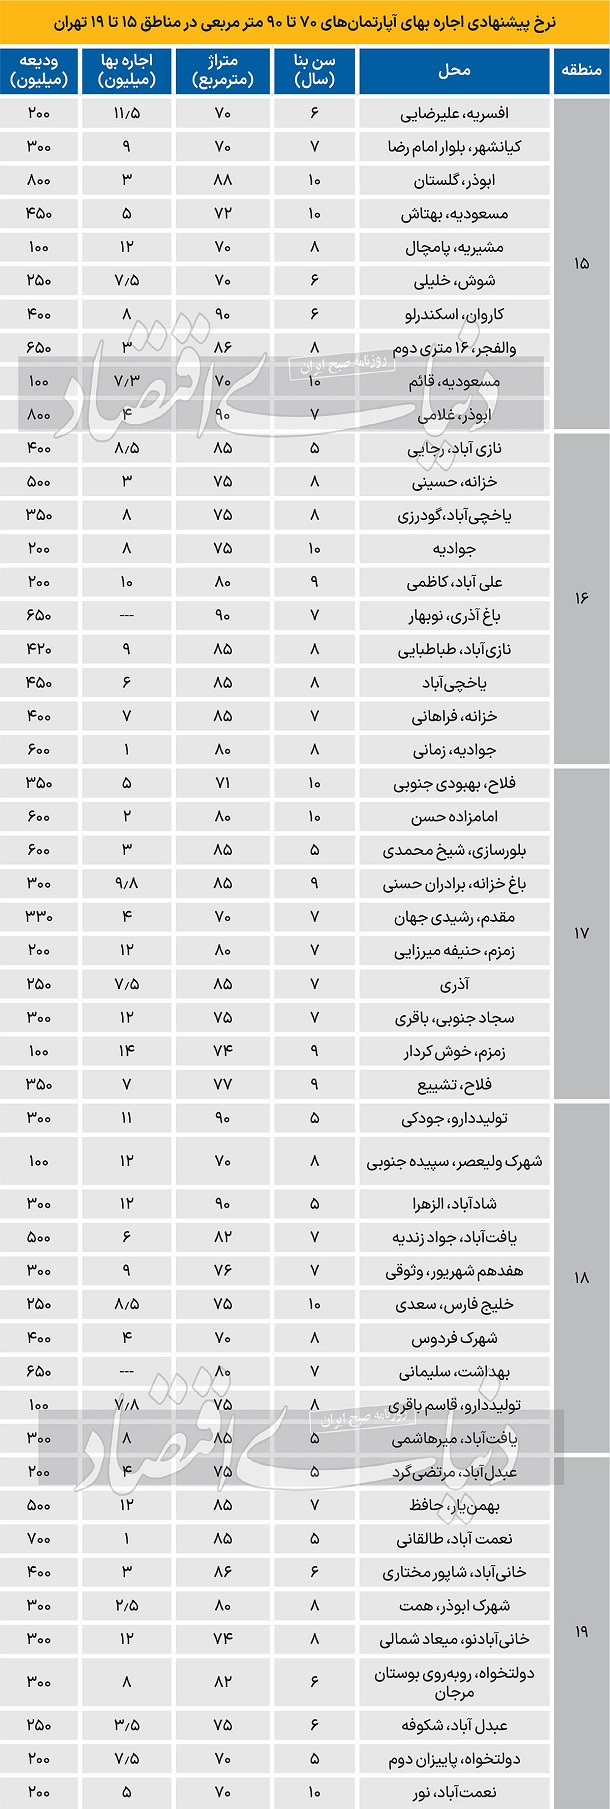 نرخ اجاره آپارتمان در مناطق 15 تا 19 تهران